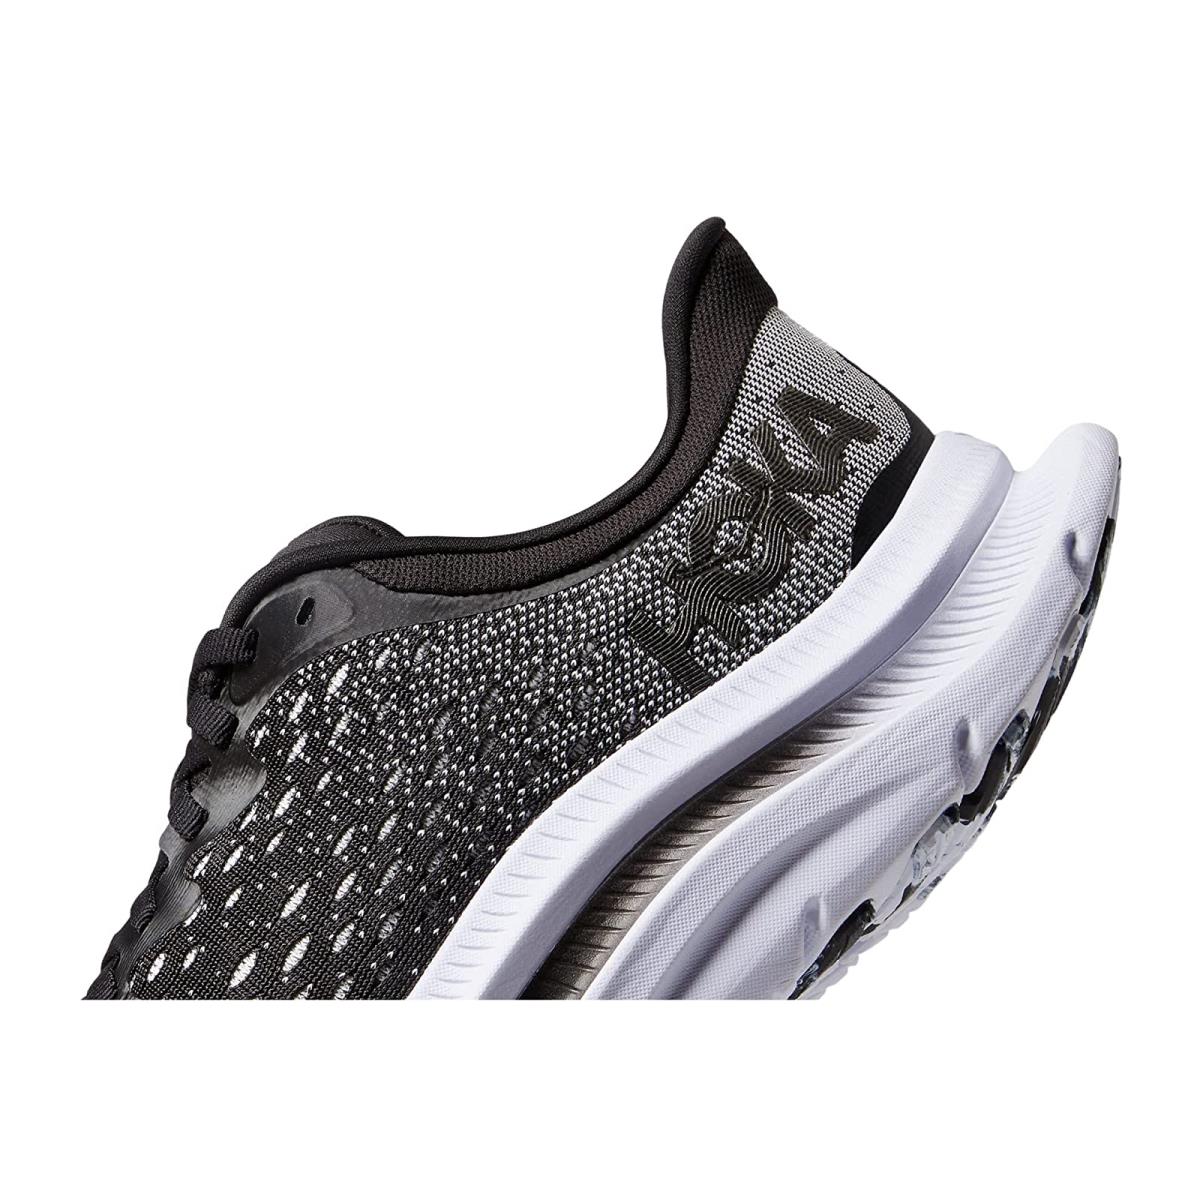 Hoka Kawana Men's Everyday Running Shoe - Black / White - Size 9